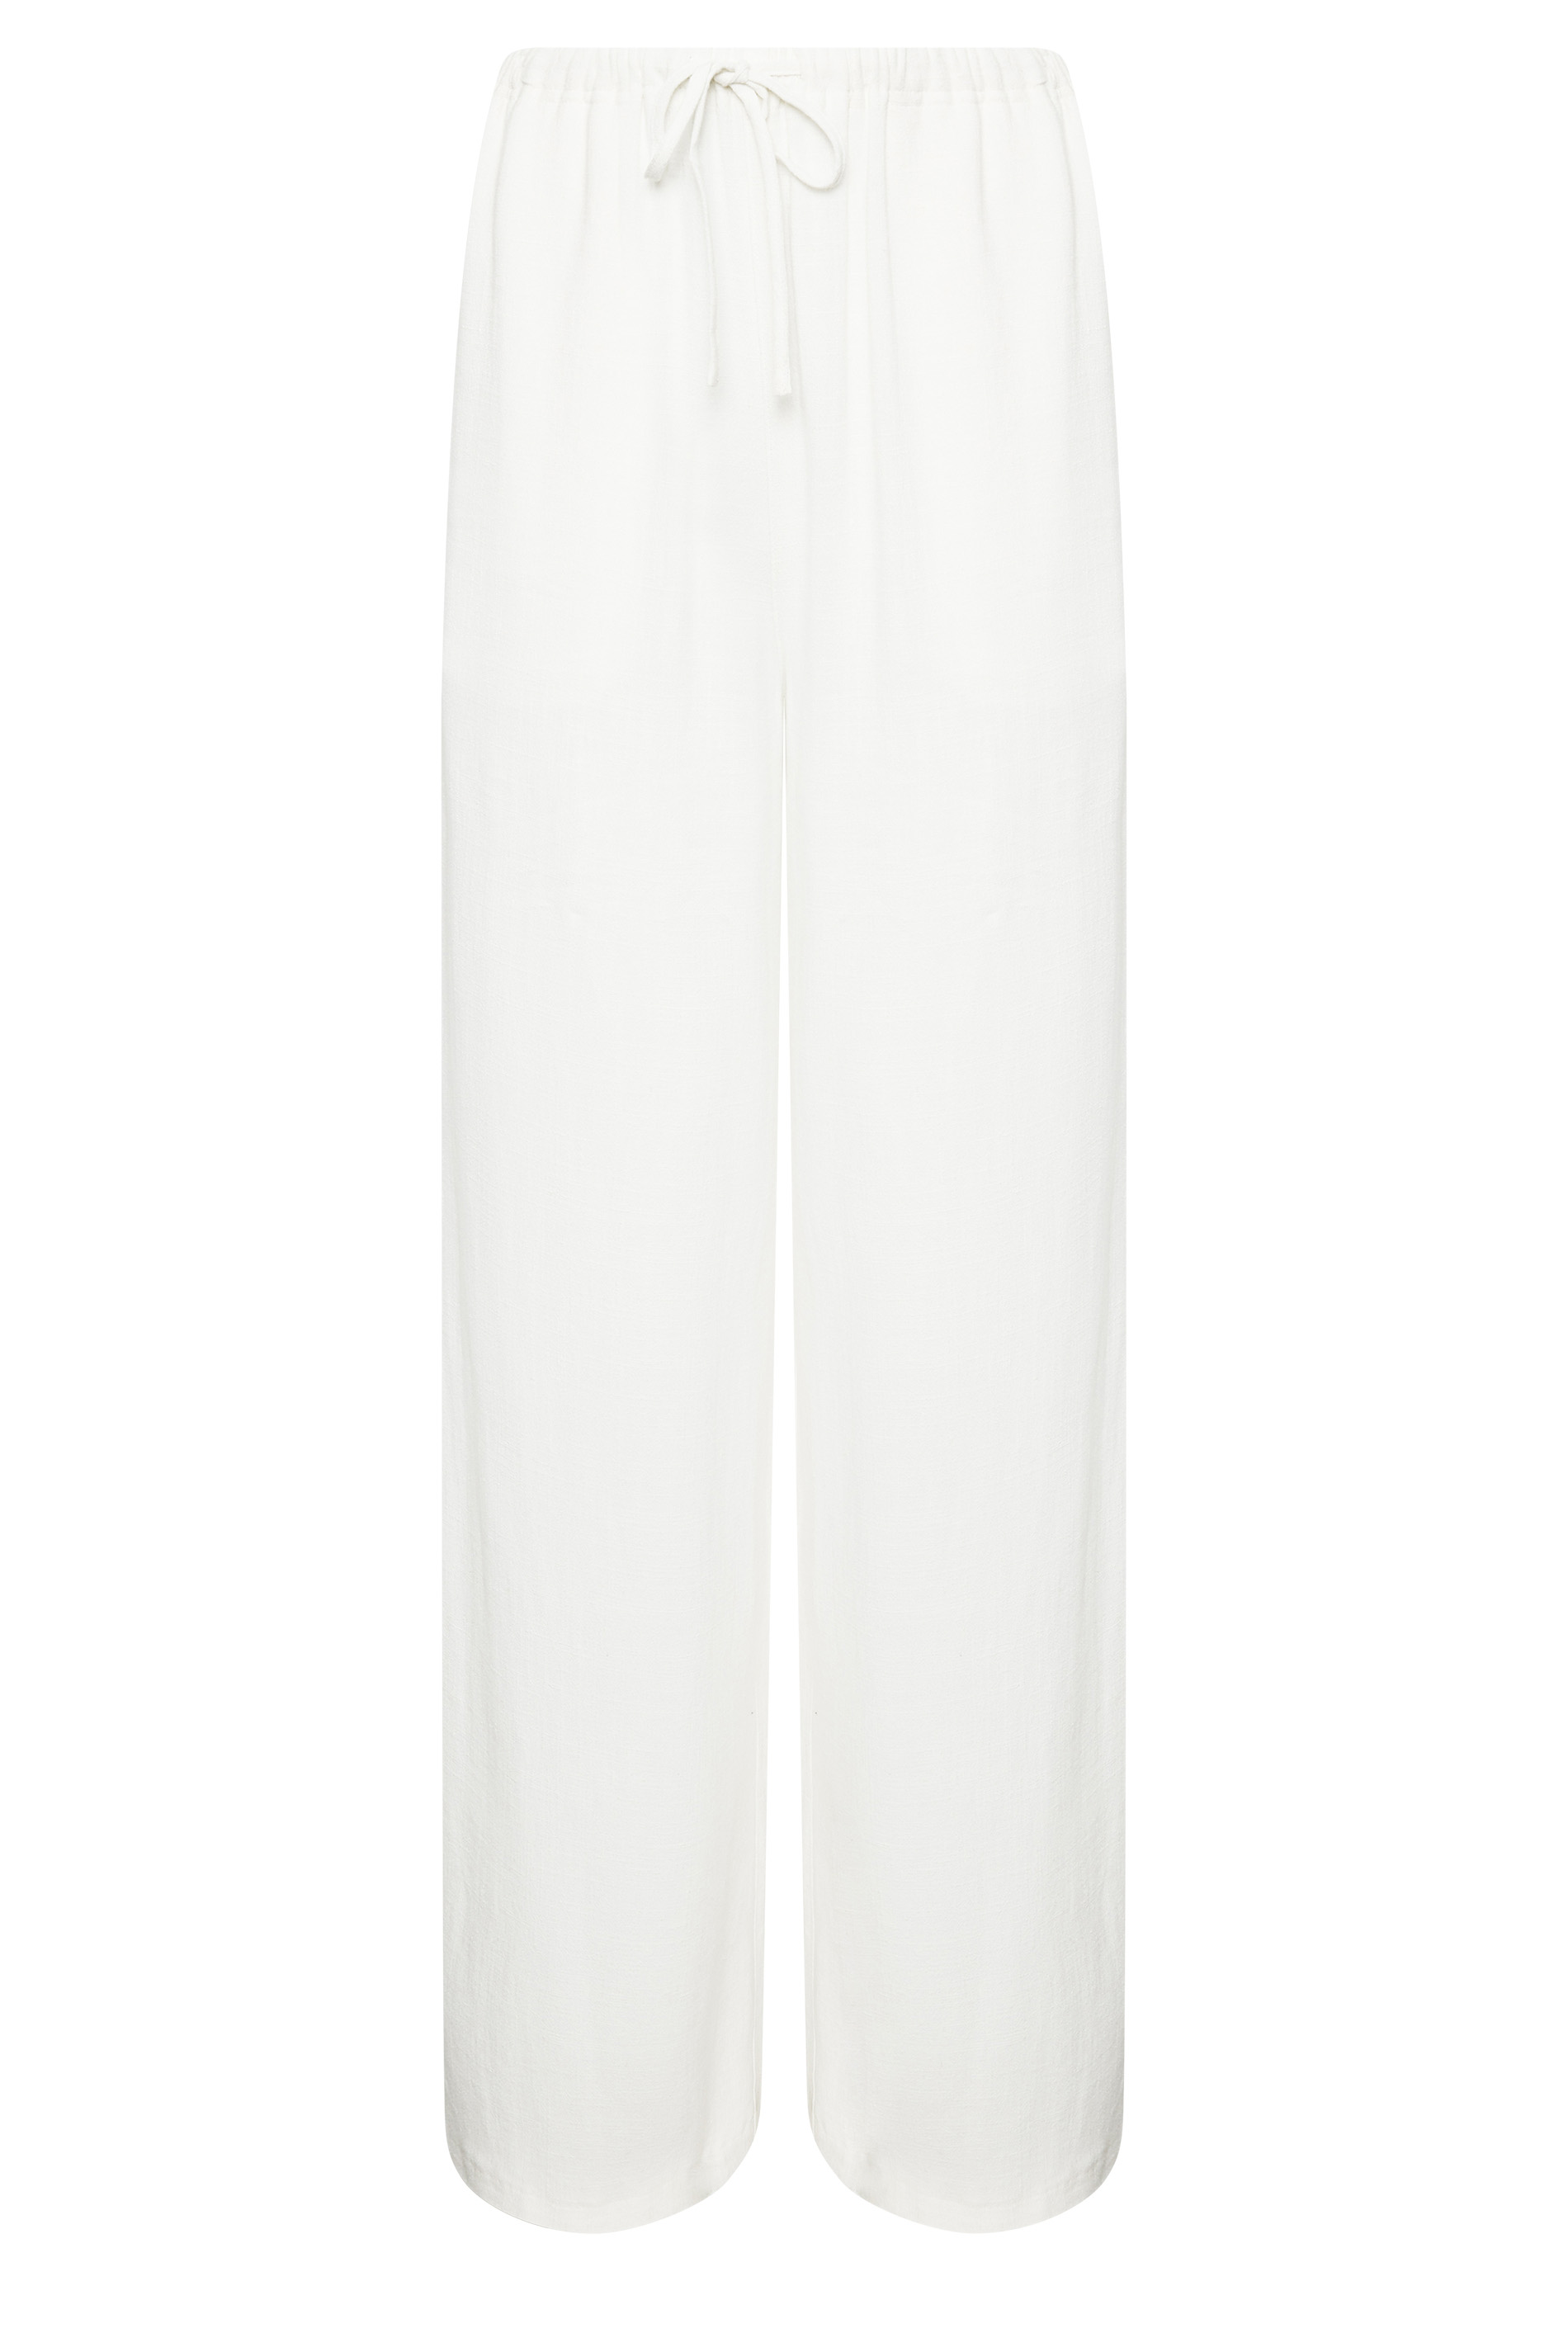 LTS Tall Women's White Linen Wide Leg Linen Look Trousers | Long Tall Sally 3